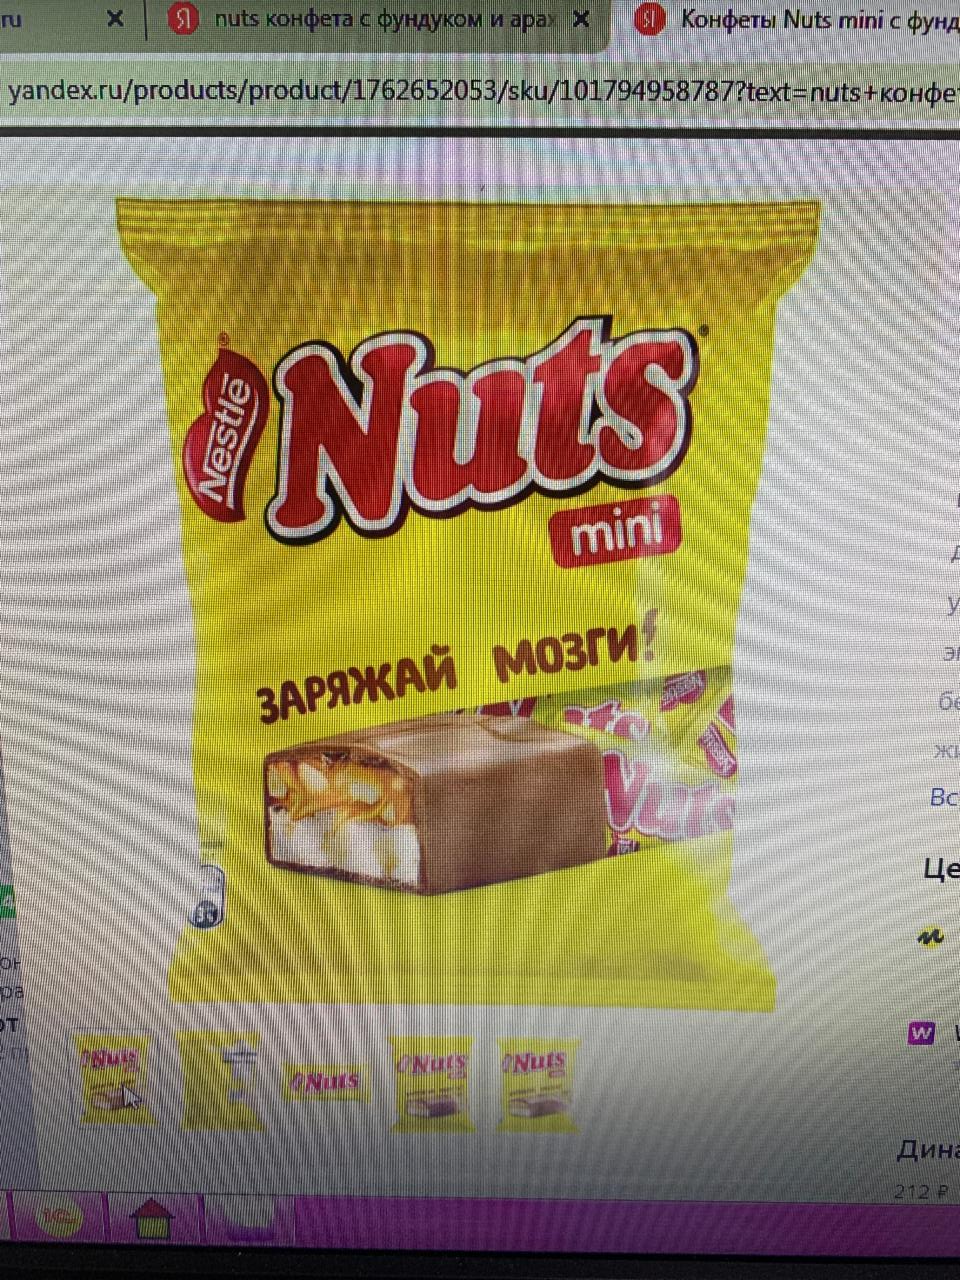 Фото - мини ореховые батончики Nestlé